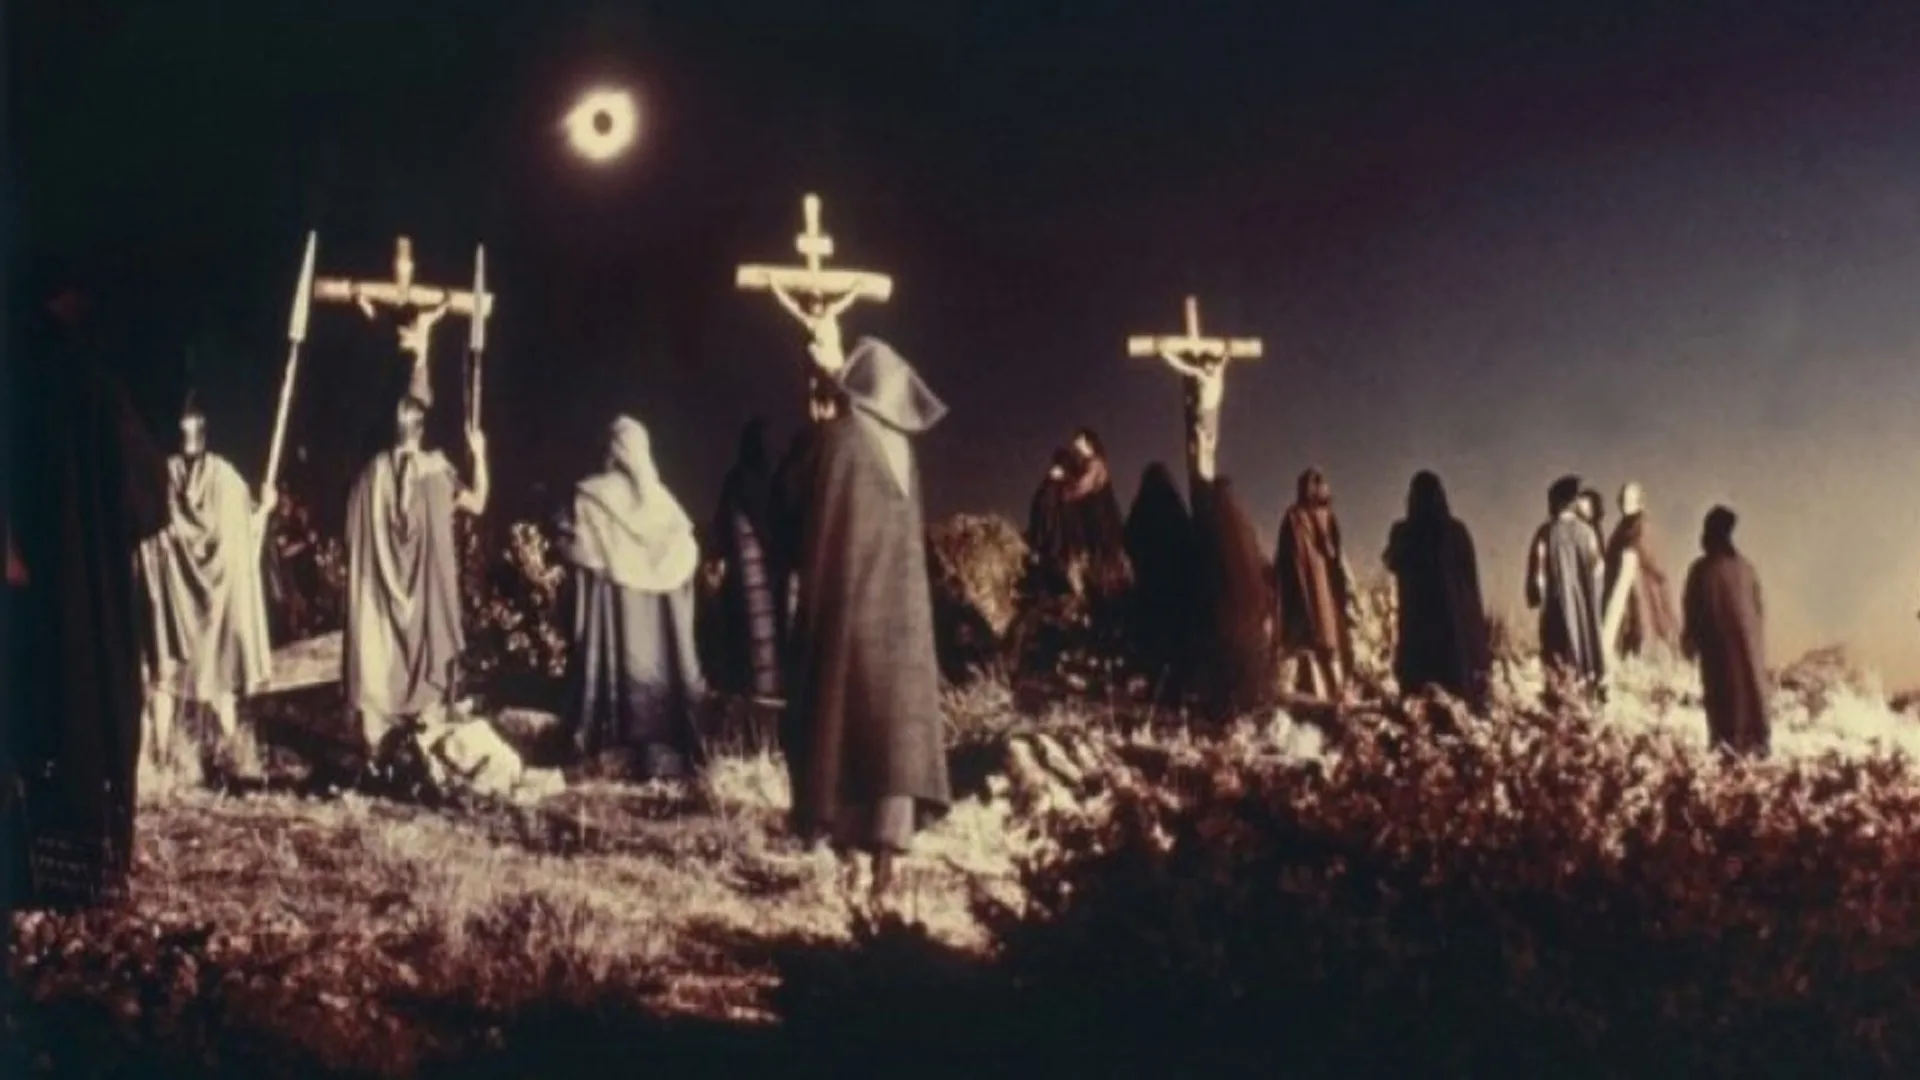 Barrabás escena crucifixión con eclipse solar